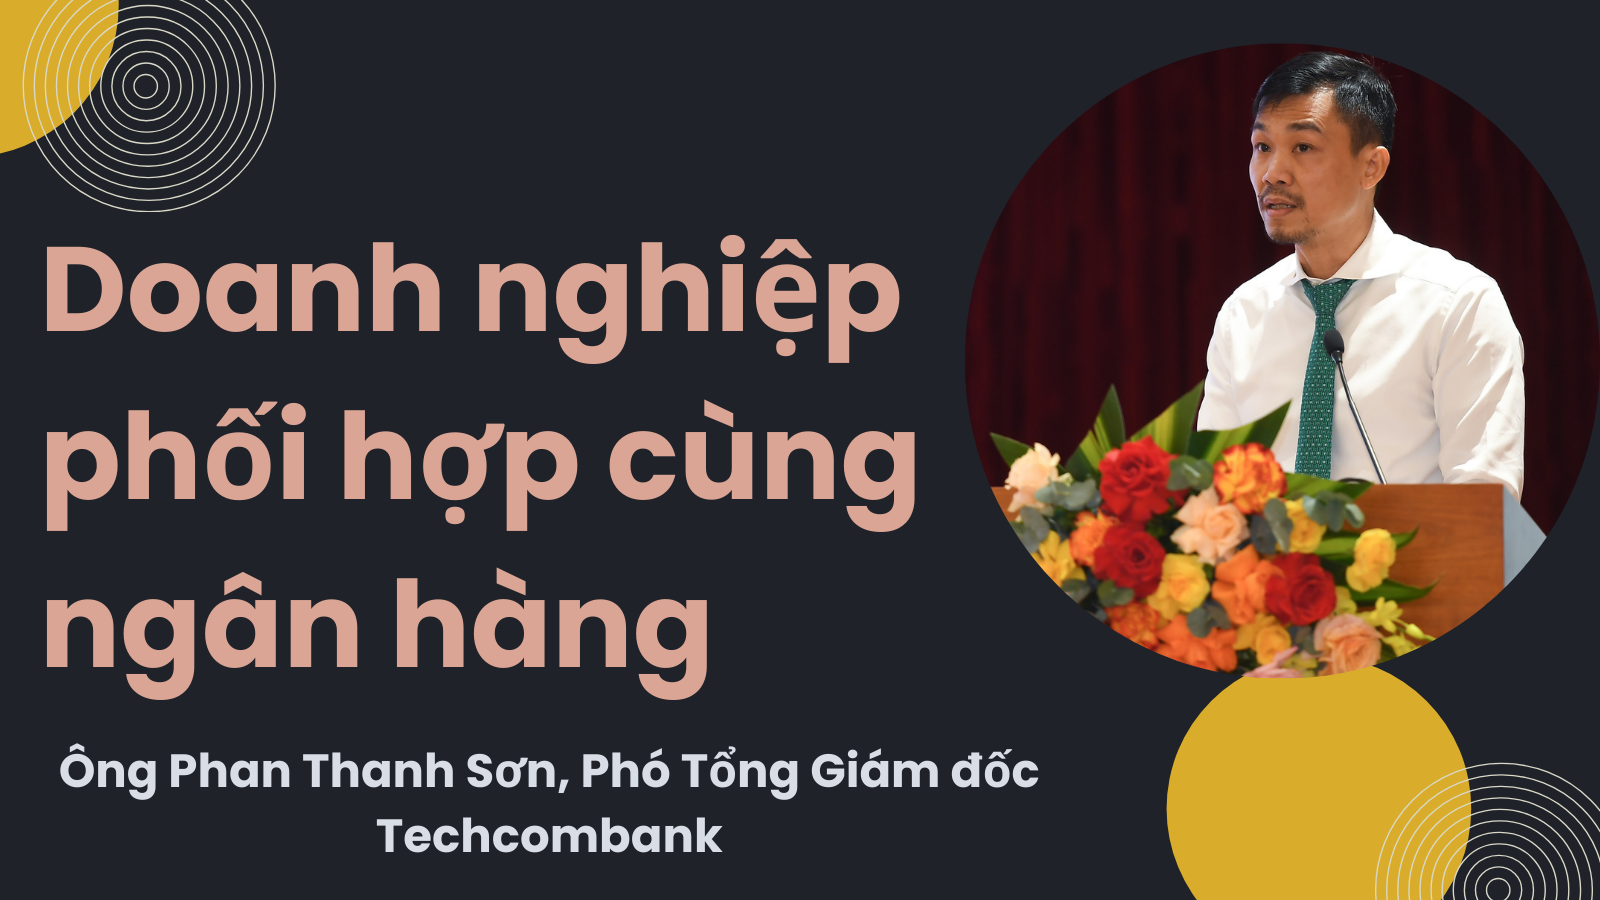 techcombank.png